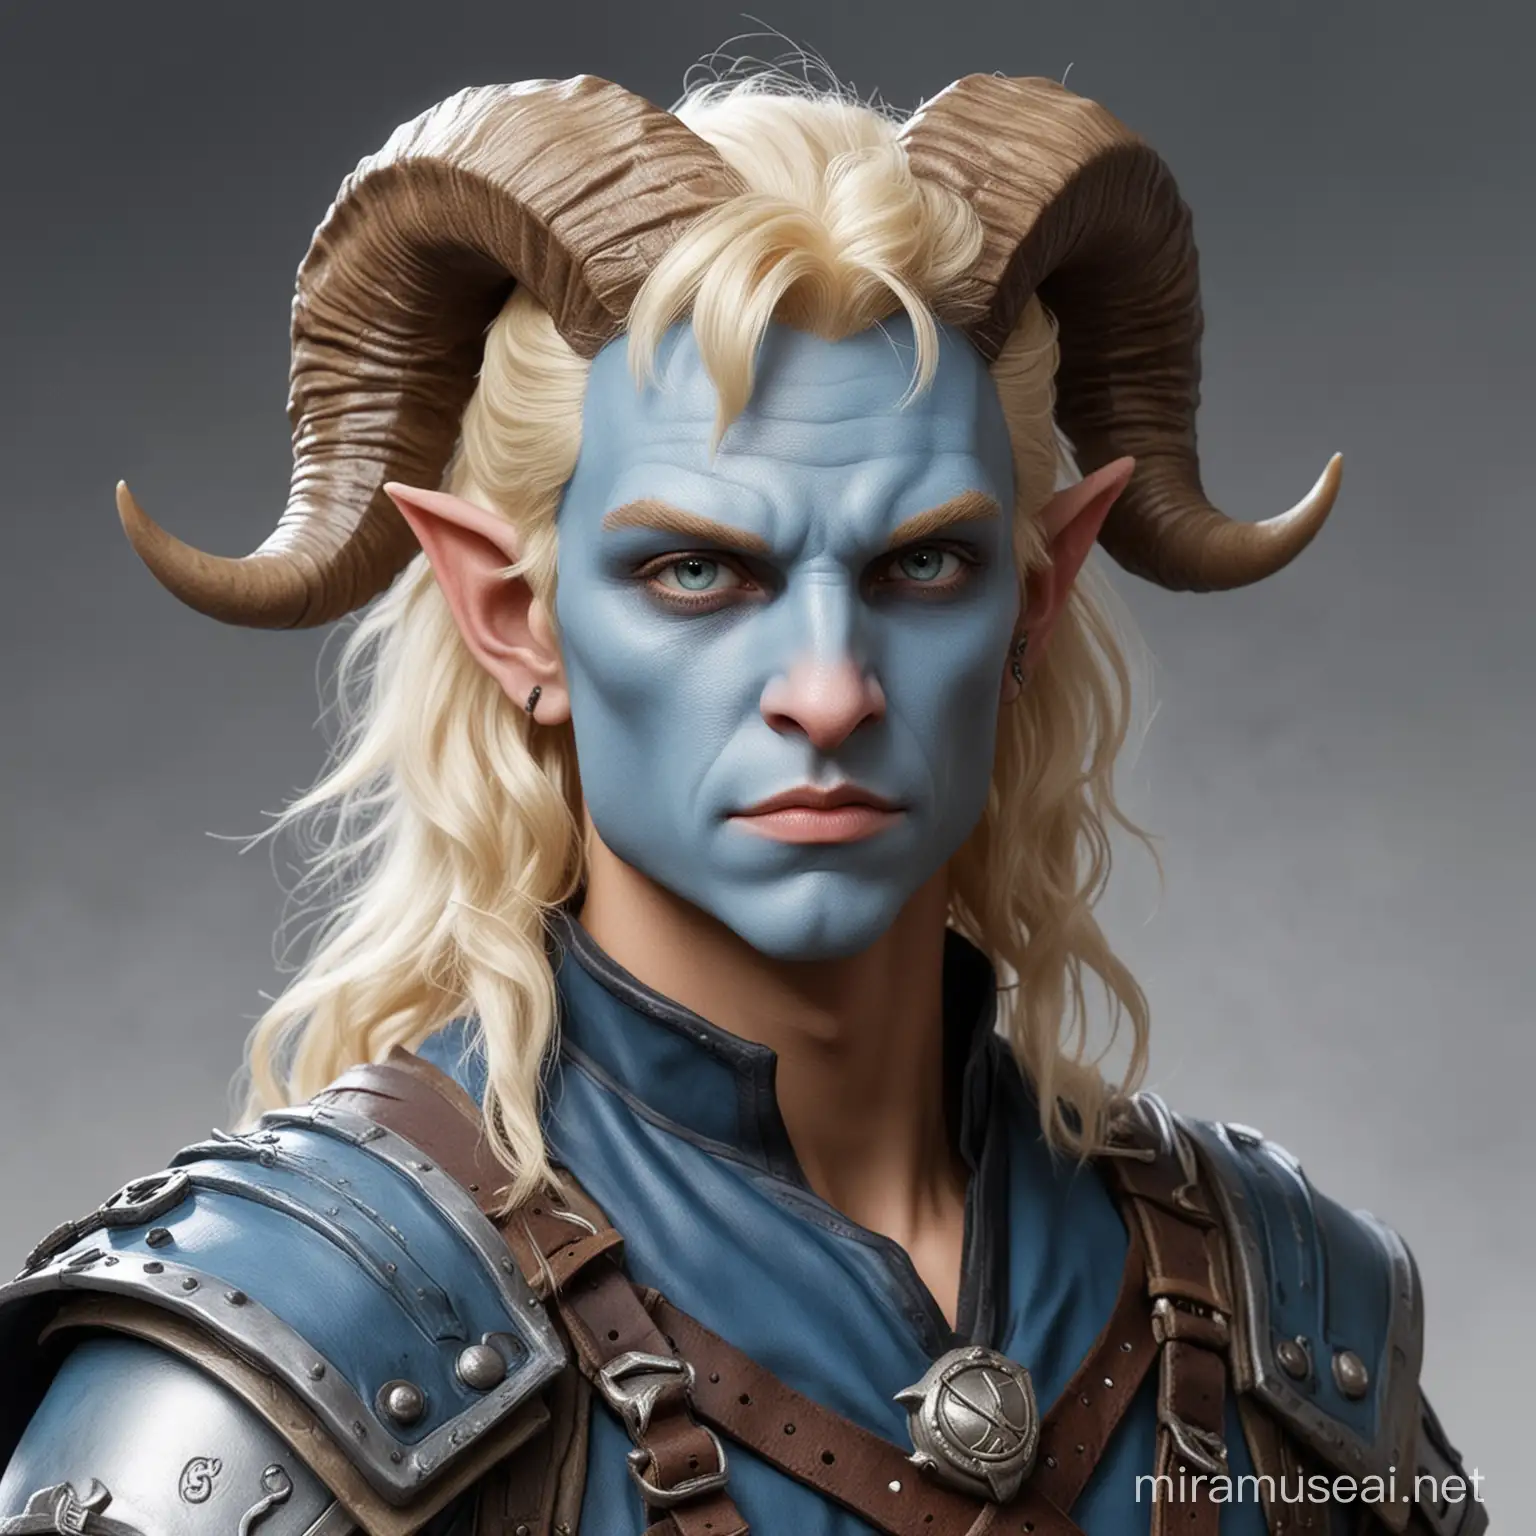 blond male tiefling light blue skin blond hair small ram like horns wearing adventurers gear